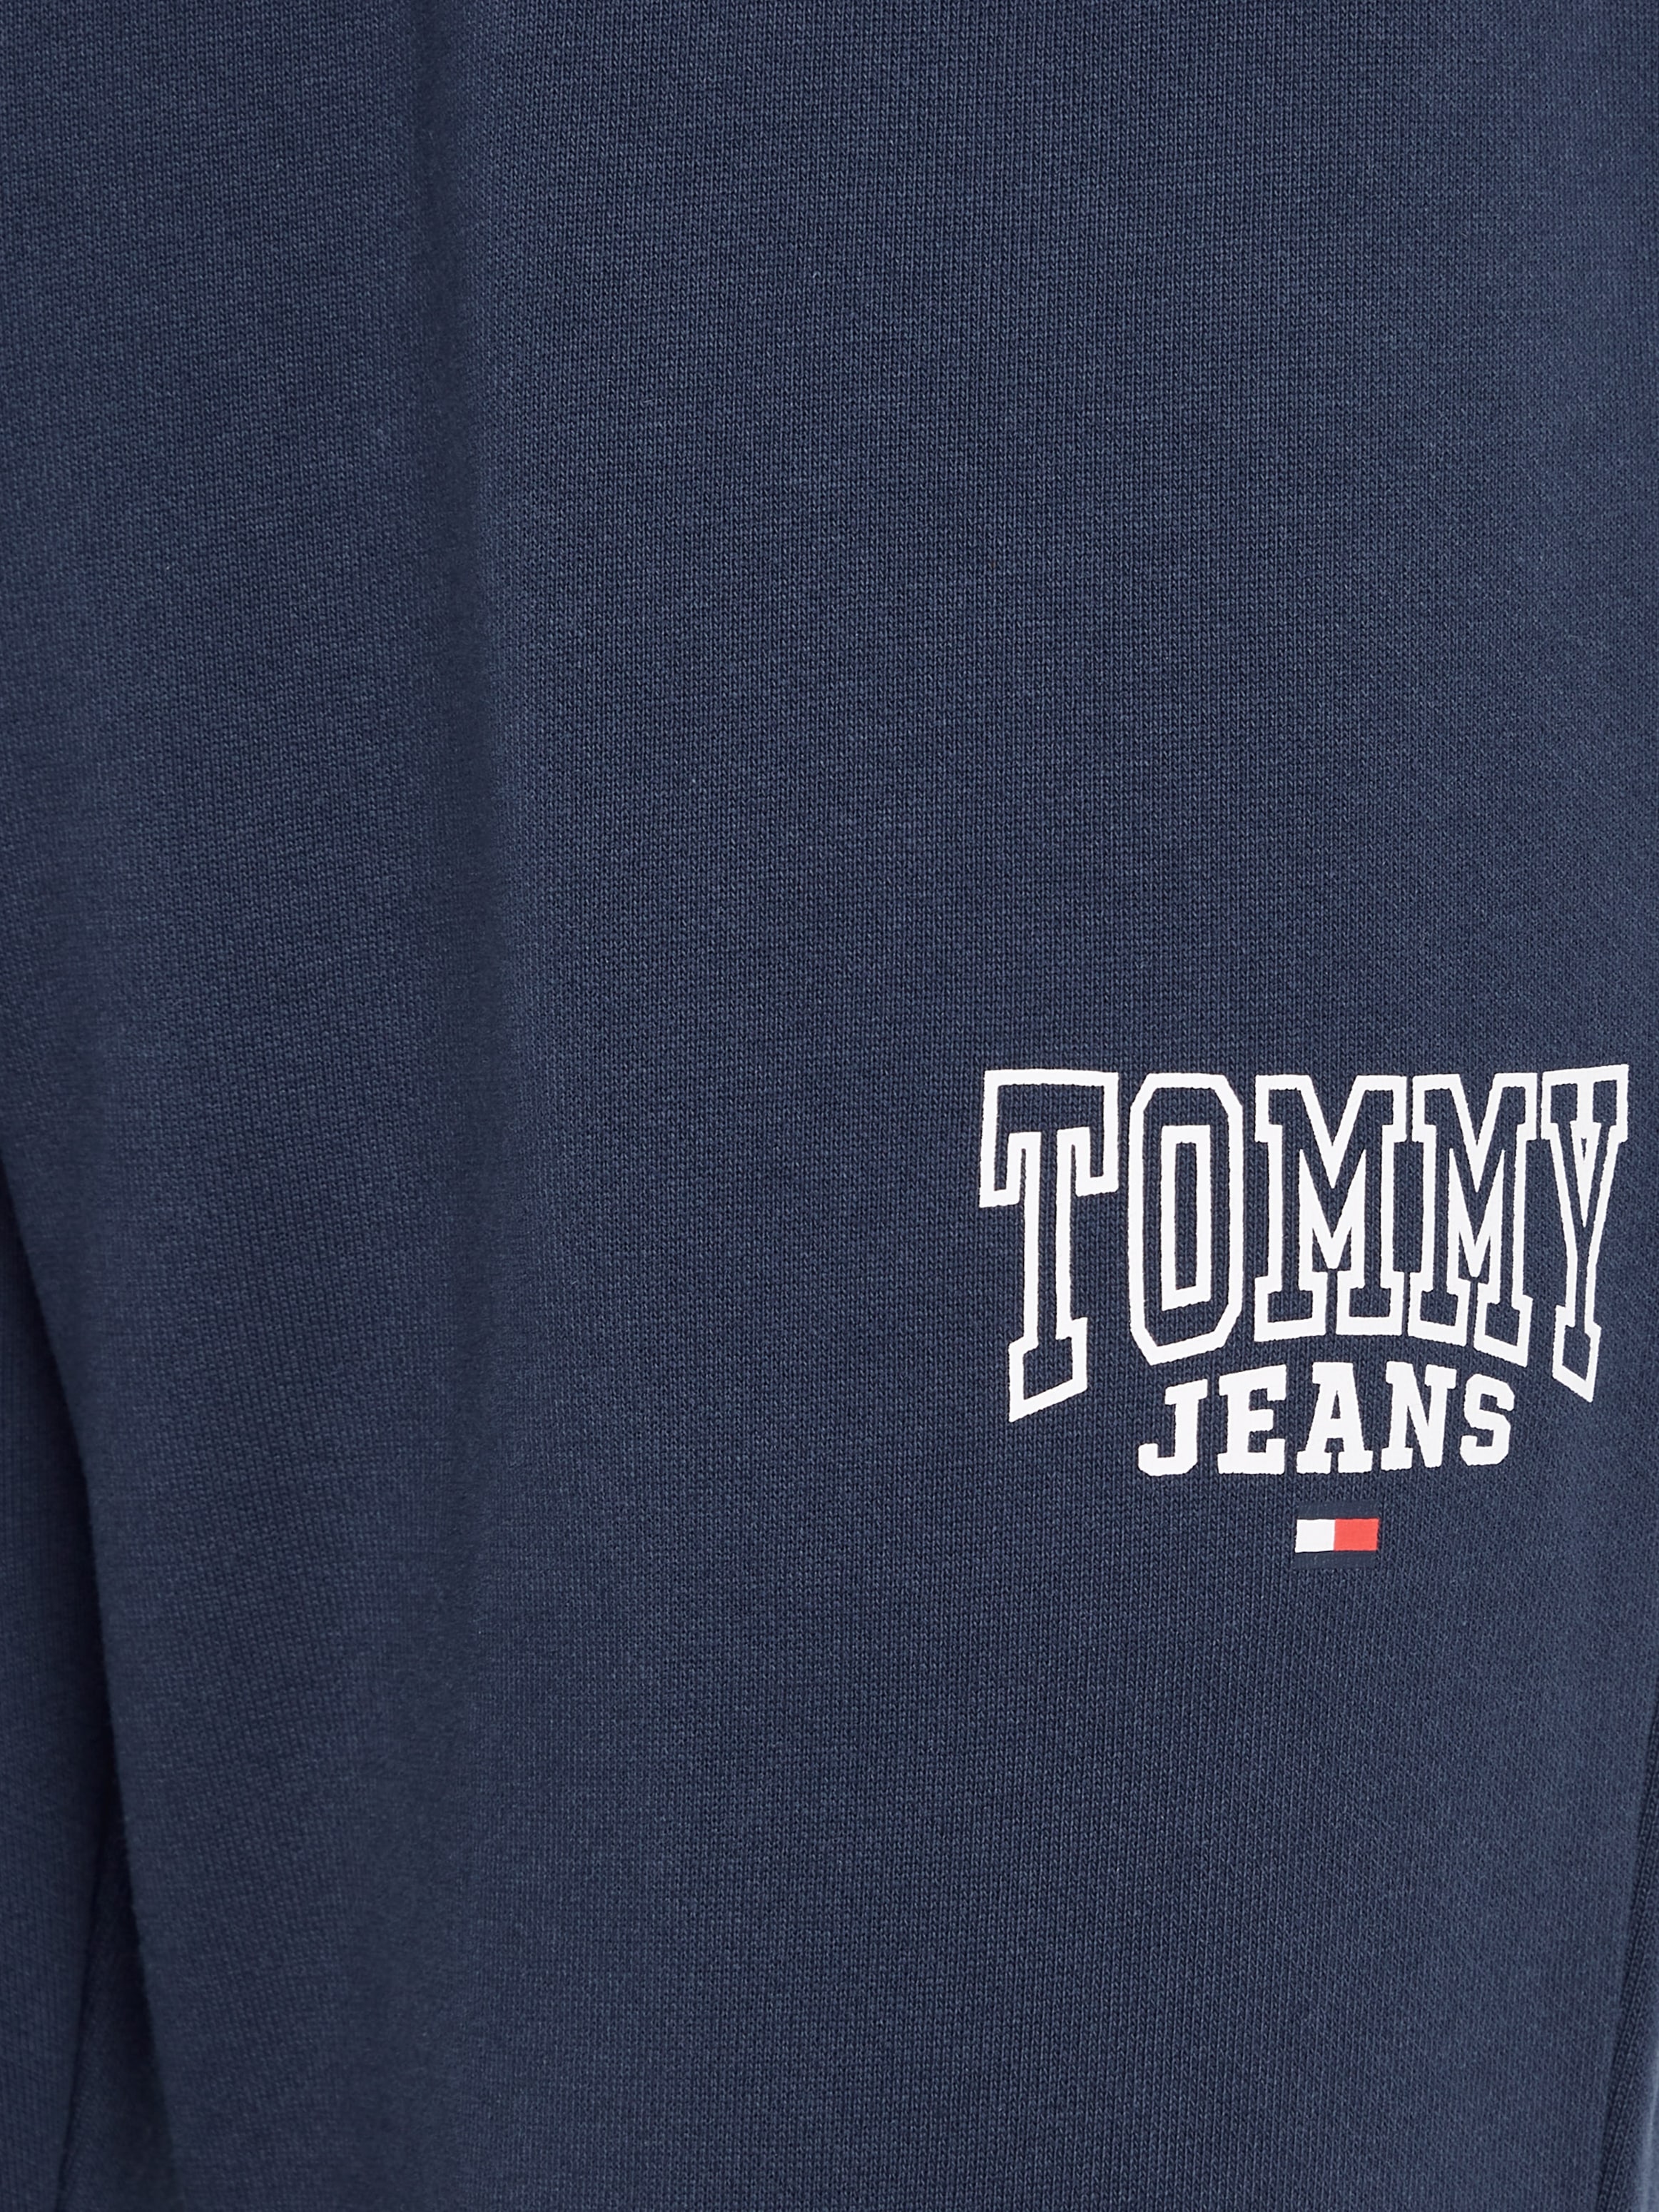 Tendance Acheter en Sweathose bas ligne ENTRY prix Tommy GRAPHIC »TJM à SLIM SWEATPANT« Jeans